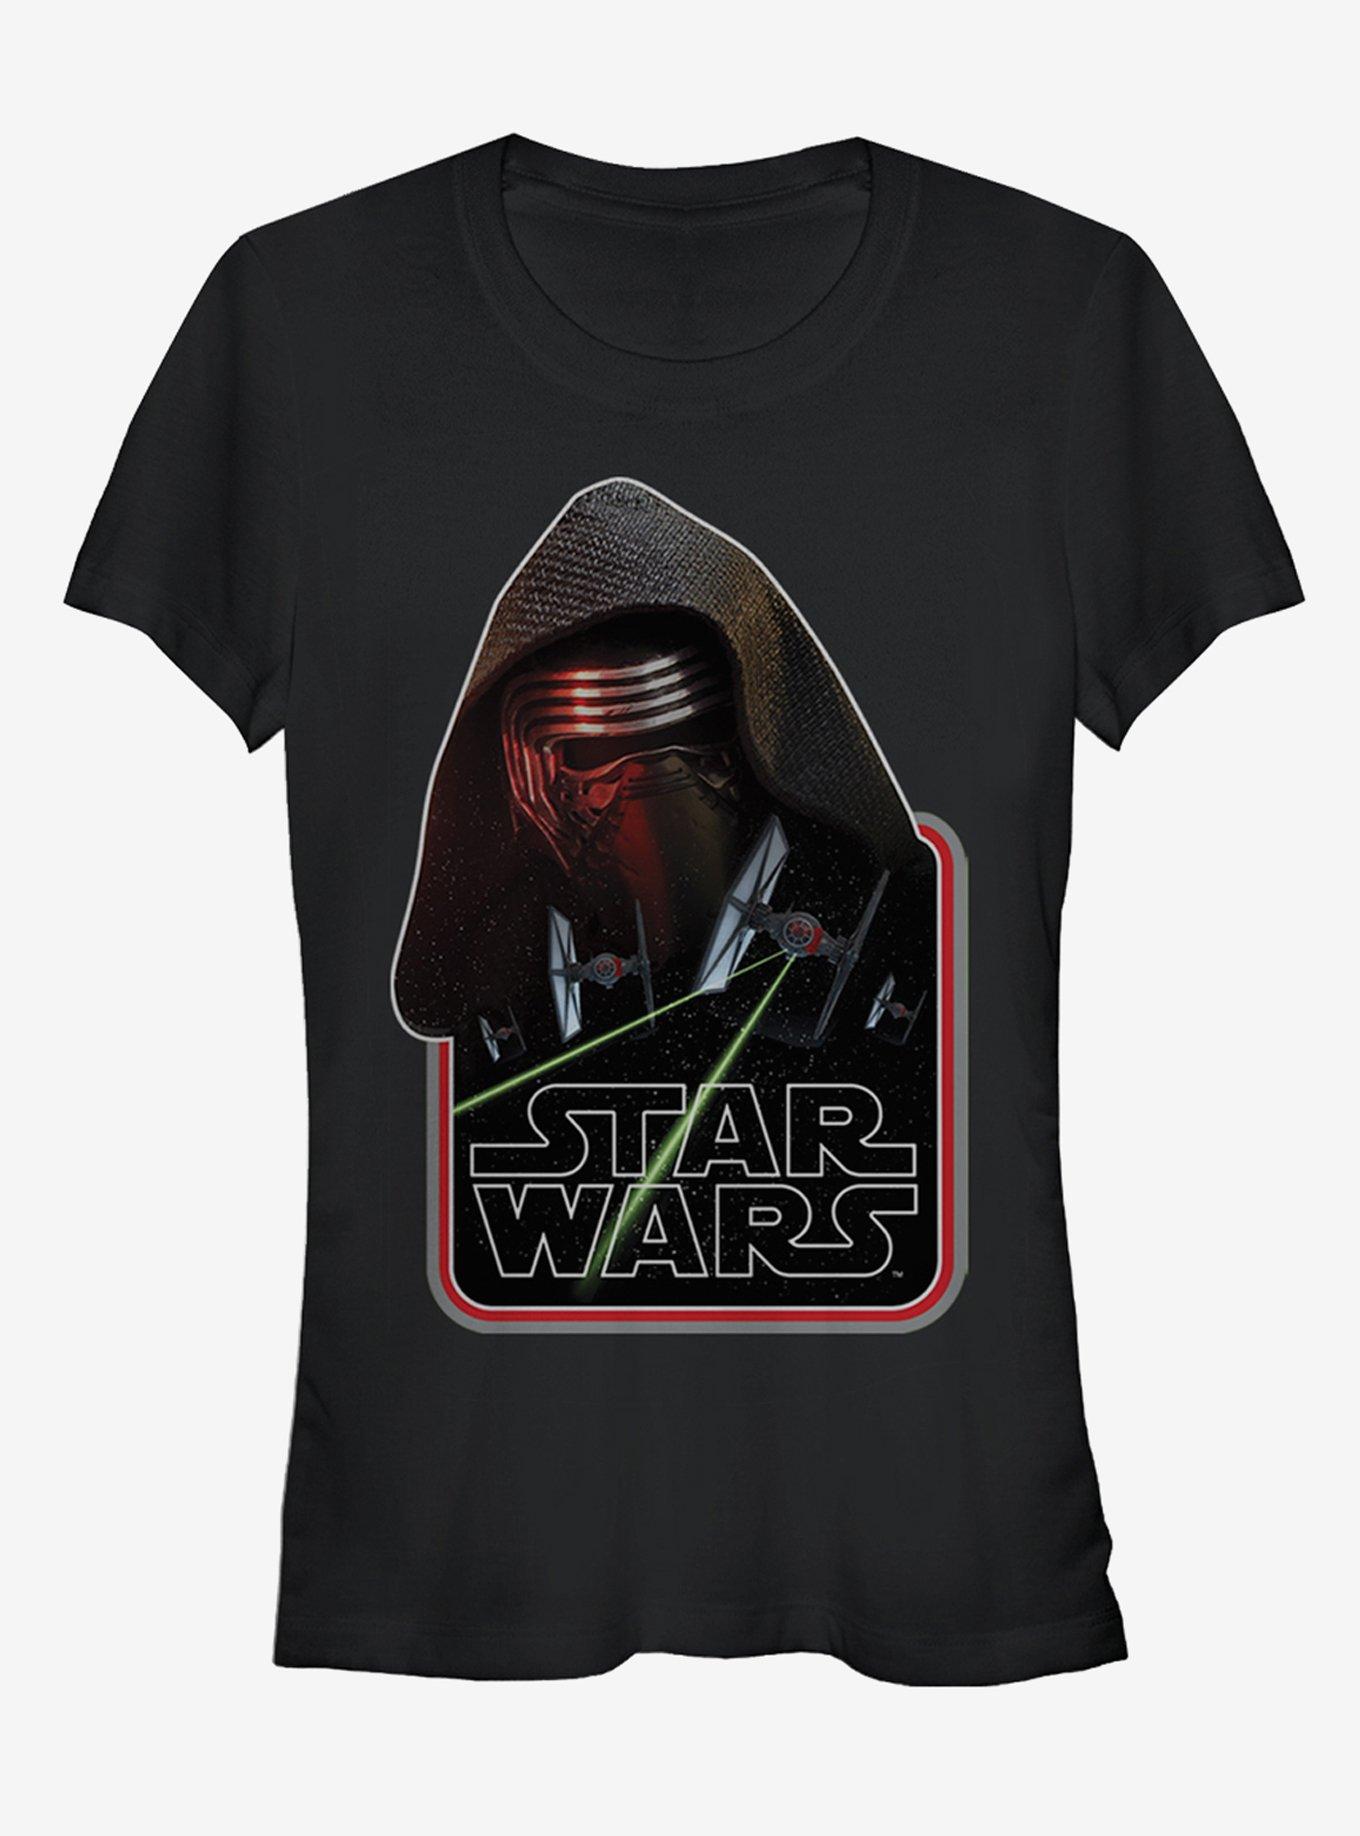 Star Wars Episode VII The Force Awakens Kylo Ren TIE Fighter Girls T-Shirt